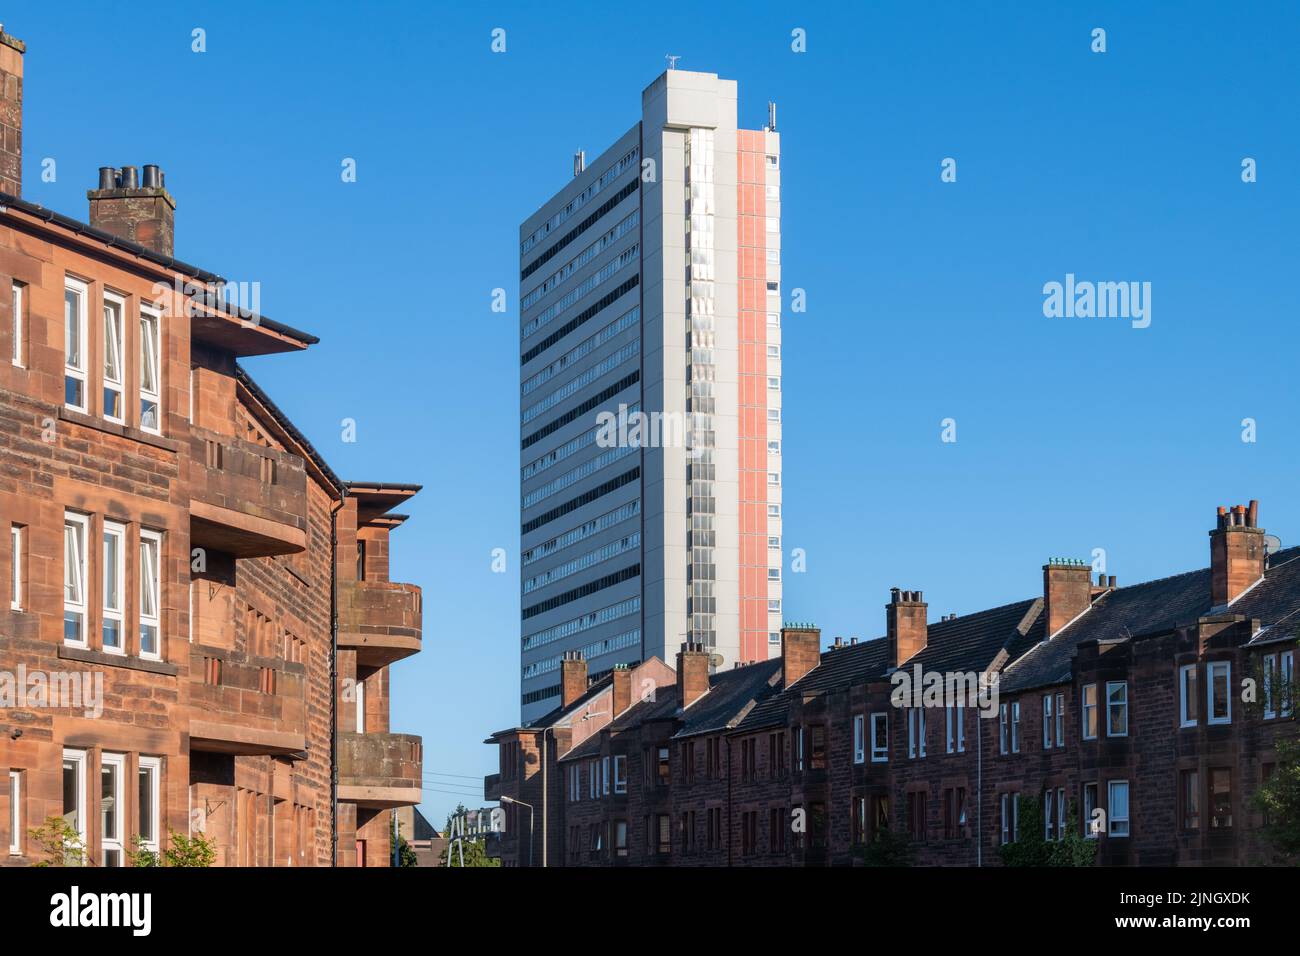 Anniesland Court - Ein denkmalgeschützter, brutalistischer Wohnturm neben traditionellen roten Sandsteinhäusern, Anniesland, Glasgow, Schottland, Großbritannien Stockfoto